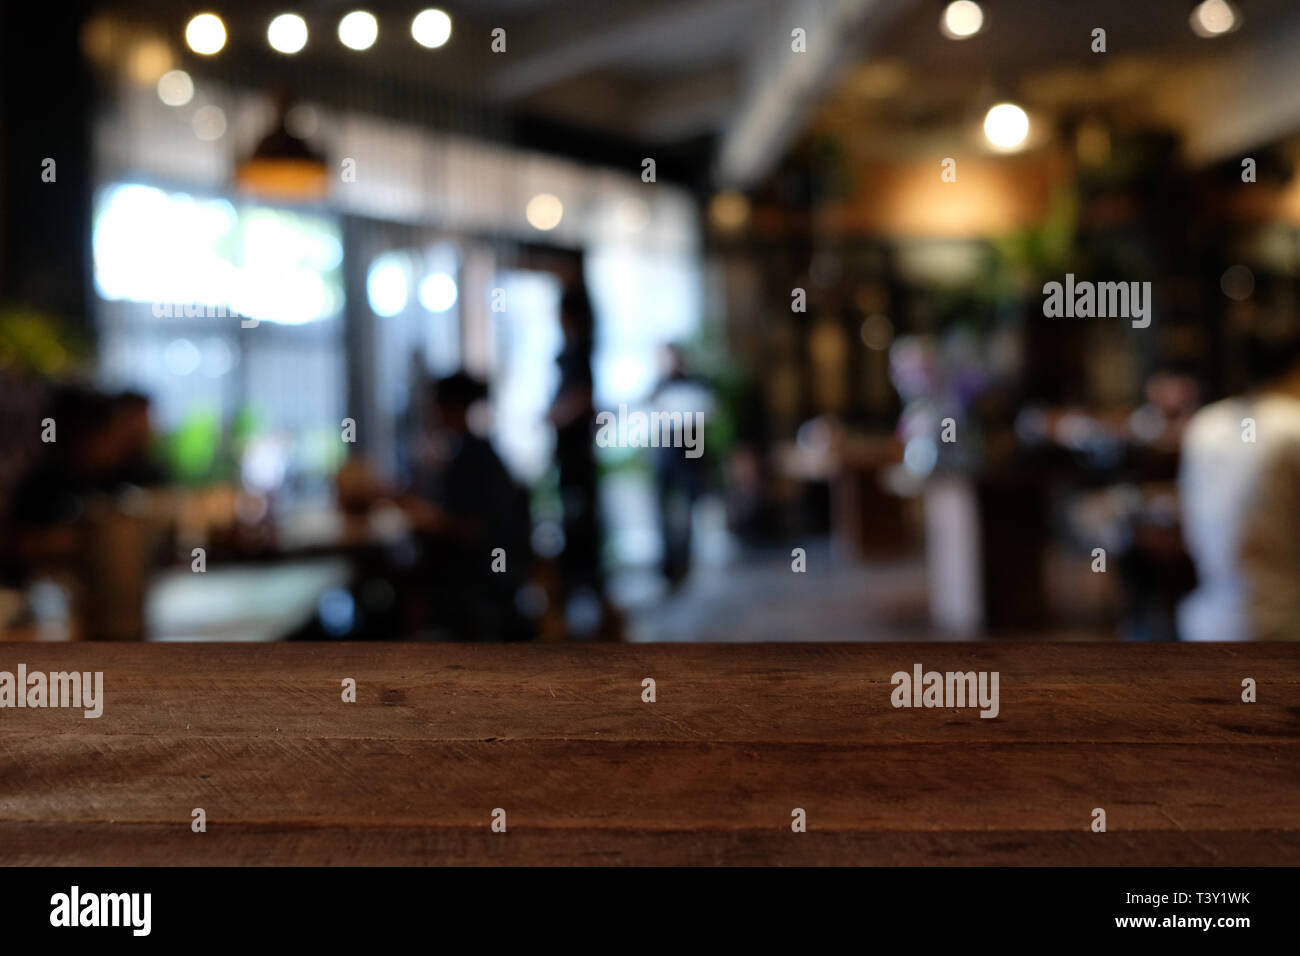 Holz Tisch auf die Unschärfe der Cafe, Coffee Shop, Bar, Restaurant, Hintergrund - können für die Anzeige verwendet oder Montage ihrer Produkte Stockfoto